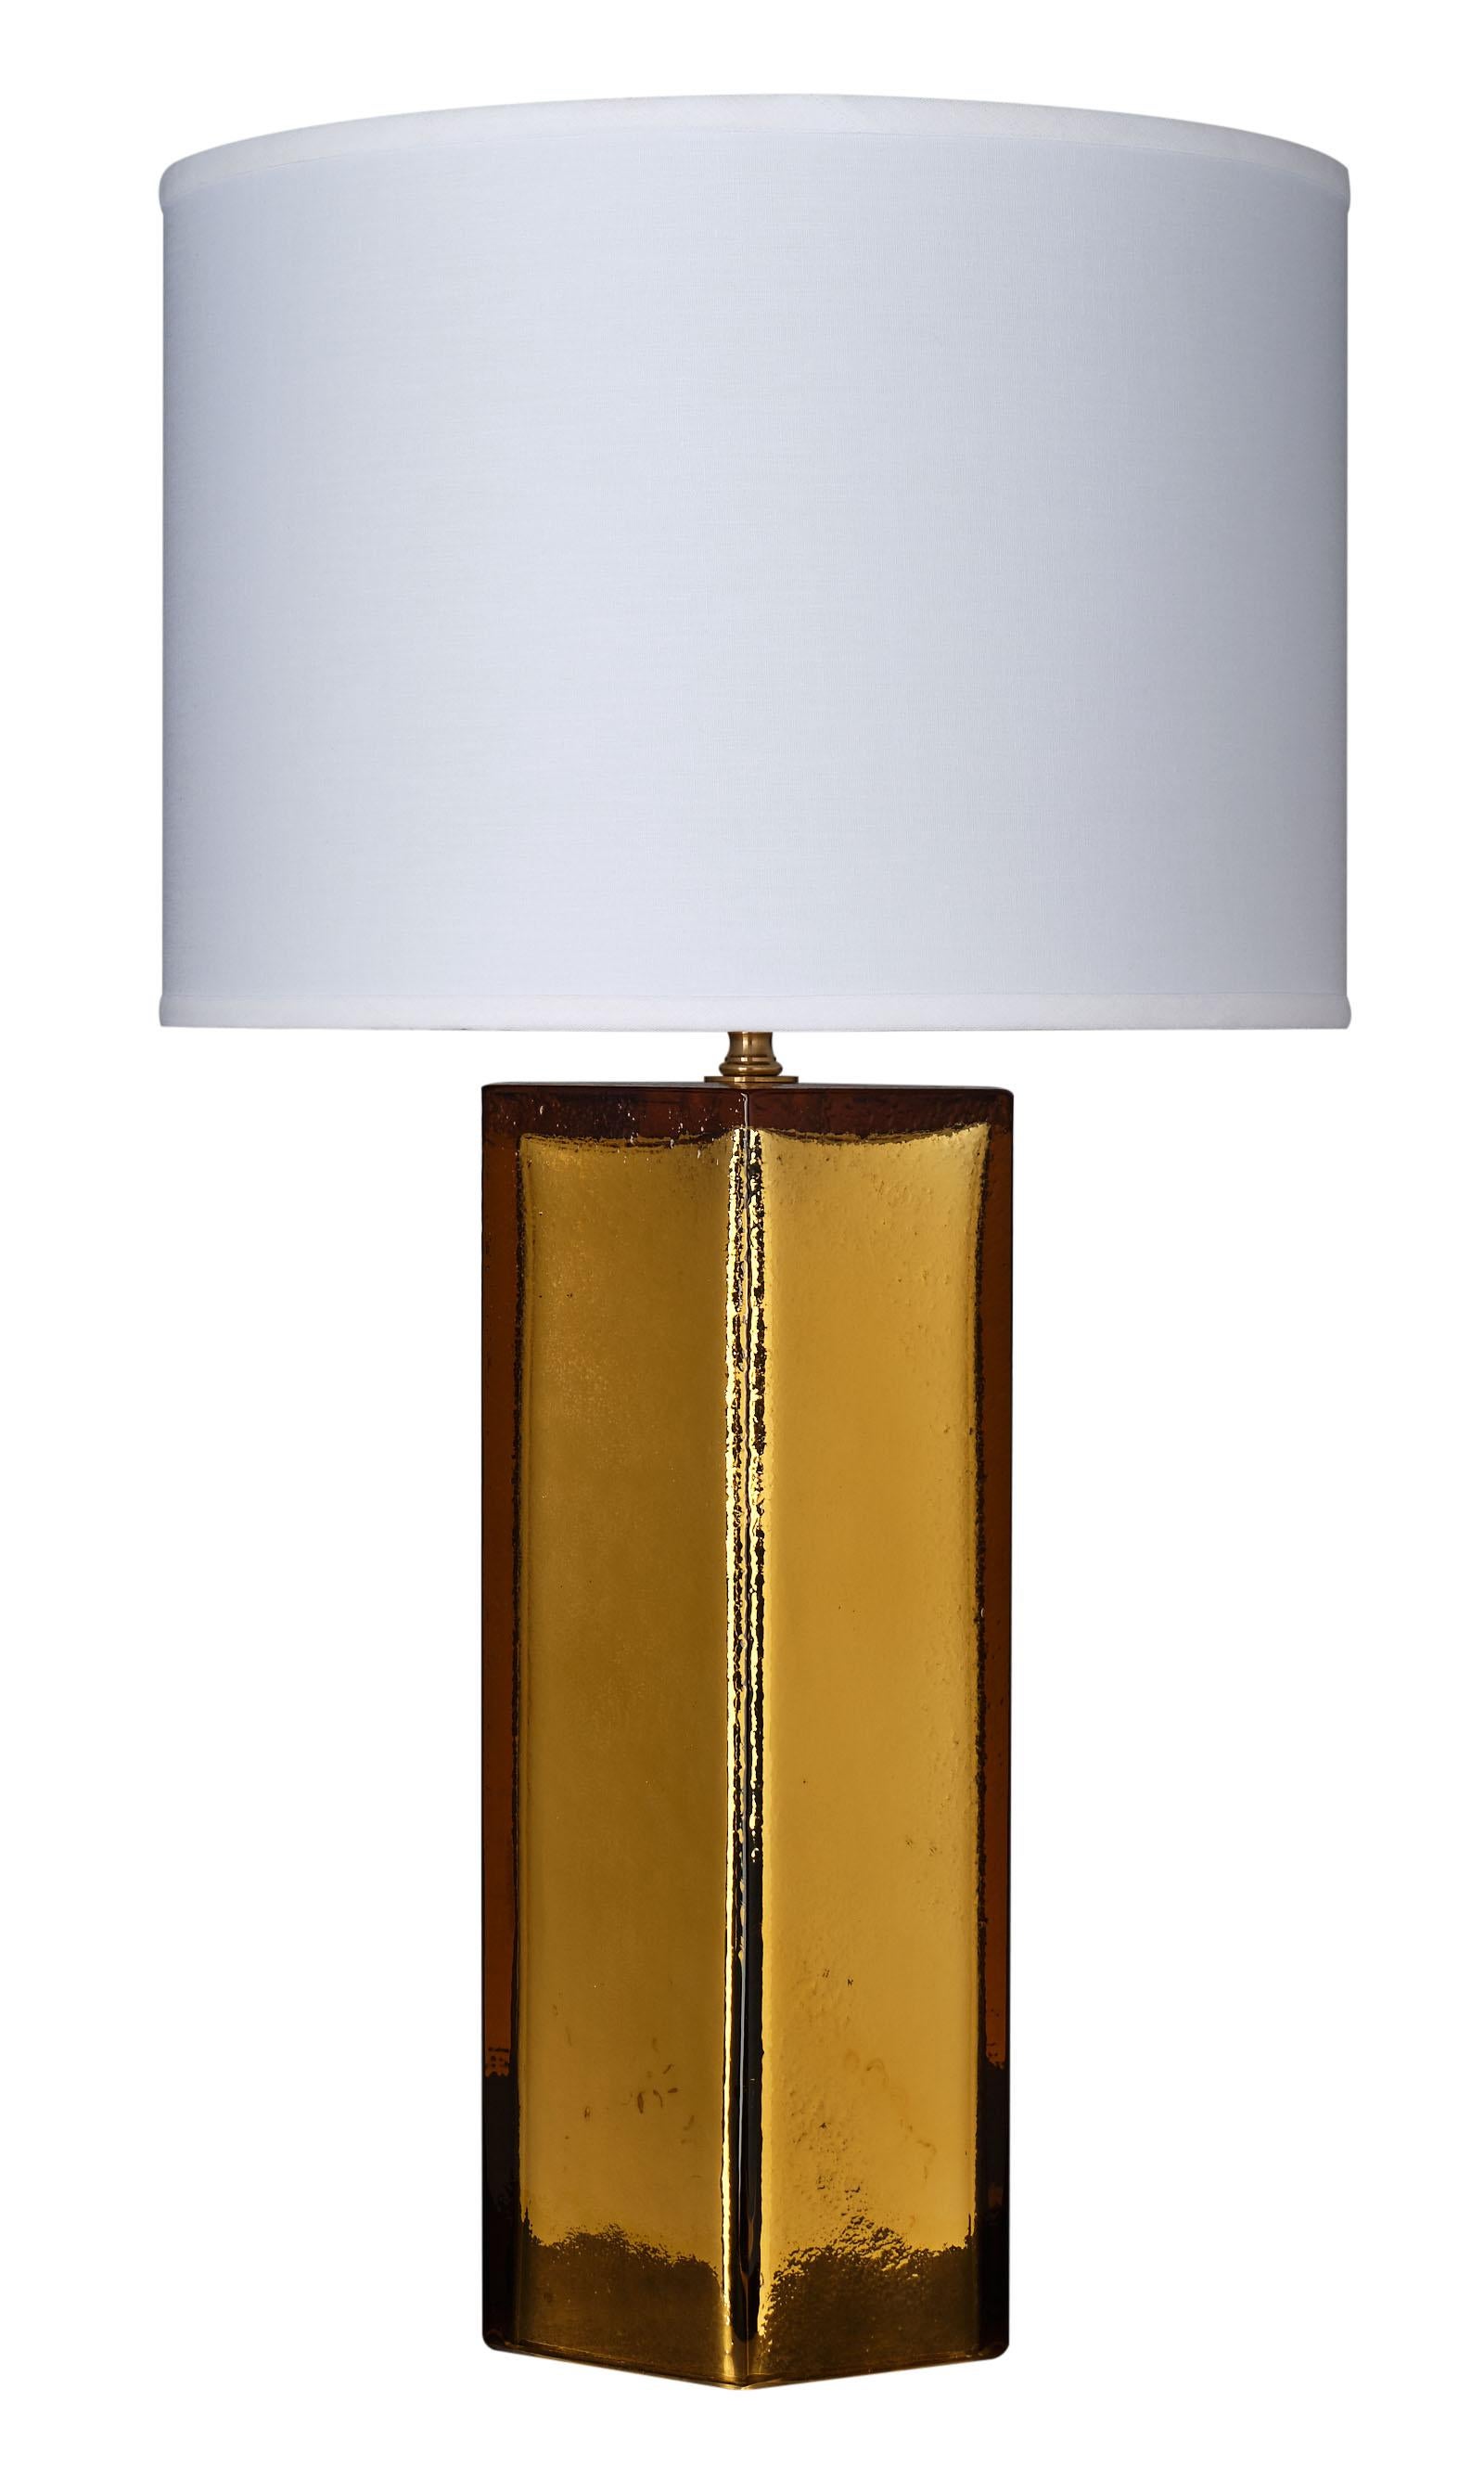 Lampes Pagliesco en verre de Murano de forme hexagonale. Nous aimons le ton magnifique du verre soufflé à la main - pagliesco en couleur et miroir à l'intérieur pour une belle brillance métallique. Cette excellente paire est signée par le maître